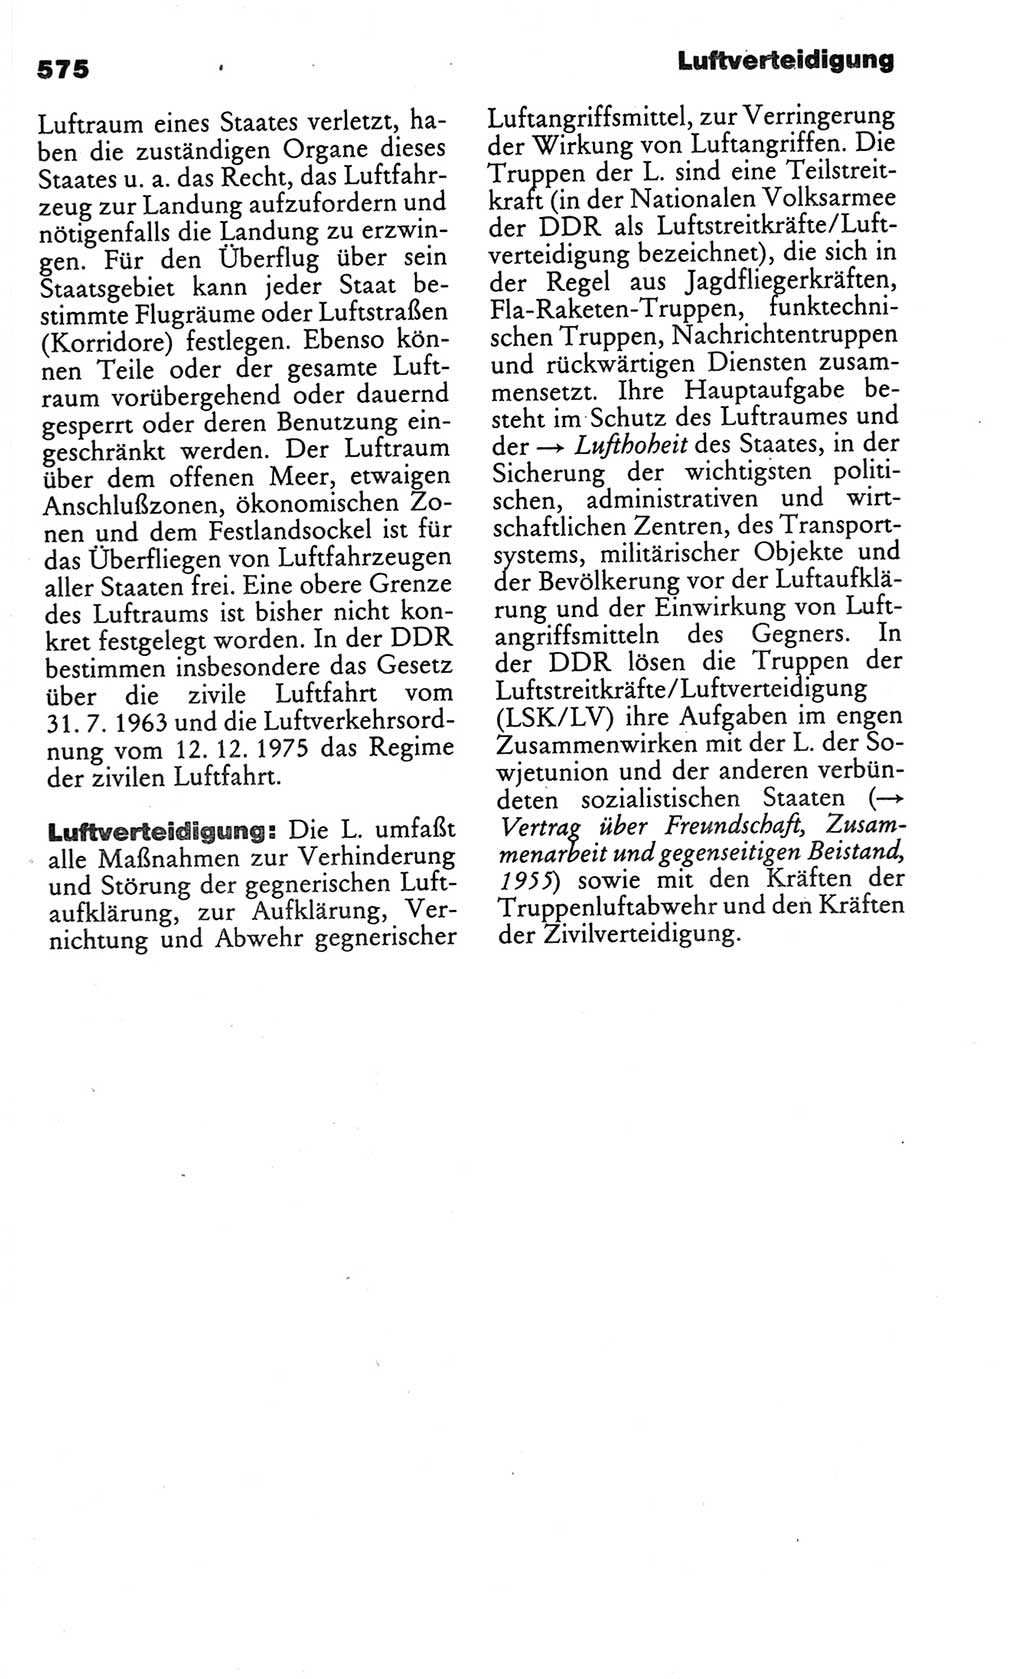 Kleines politisches Wörterbuch [Deutsche Demokratische Republik (DDR)] 1986, Seite 575 (Kl. pol. Wb. DDR 1986, S. 575)